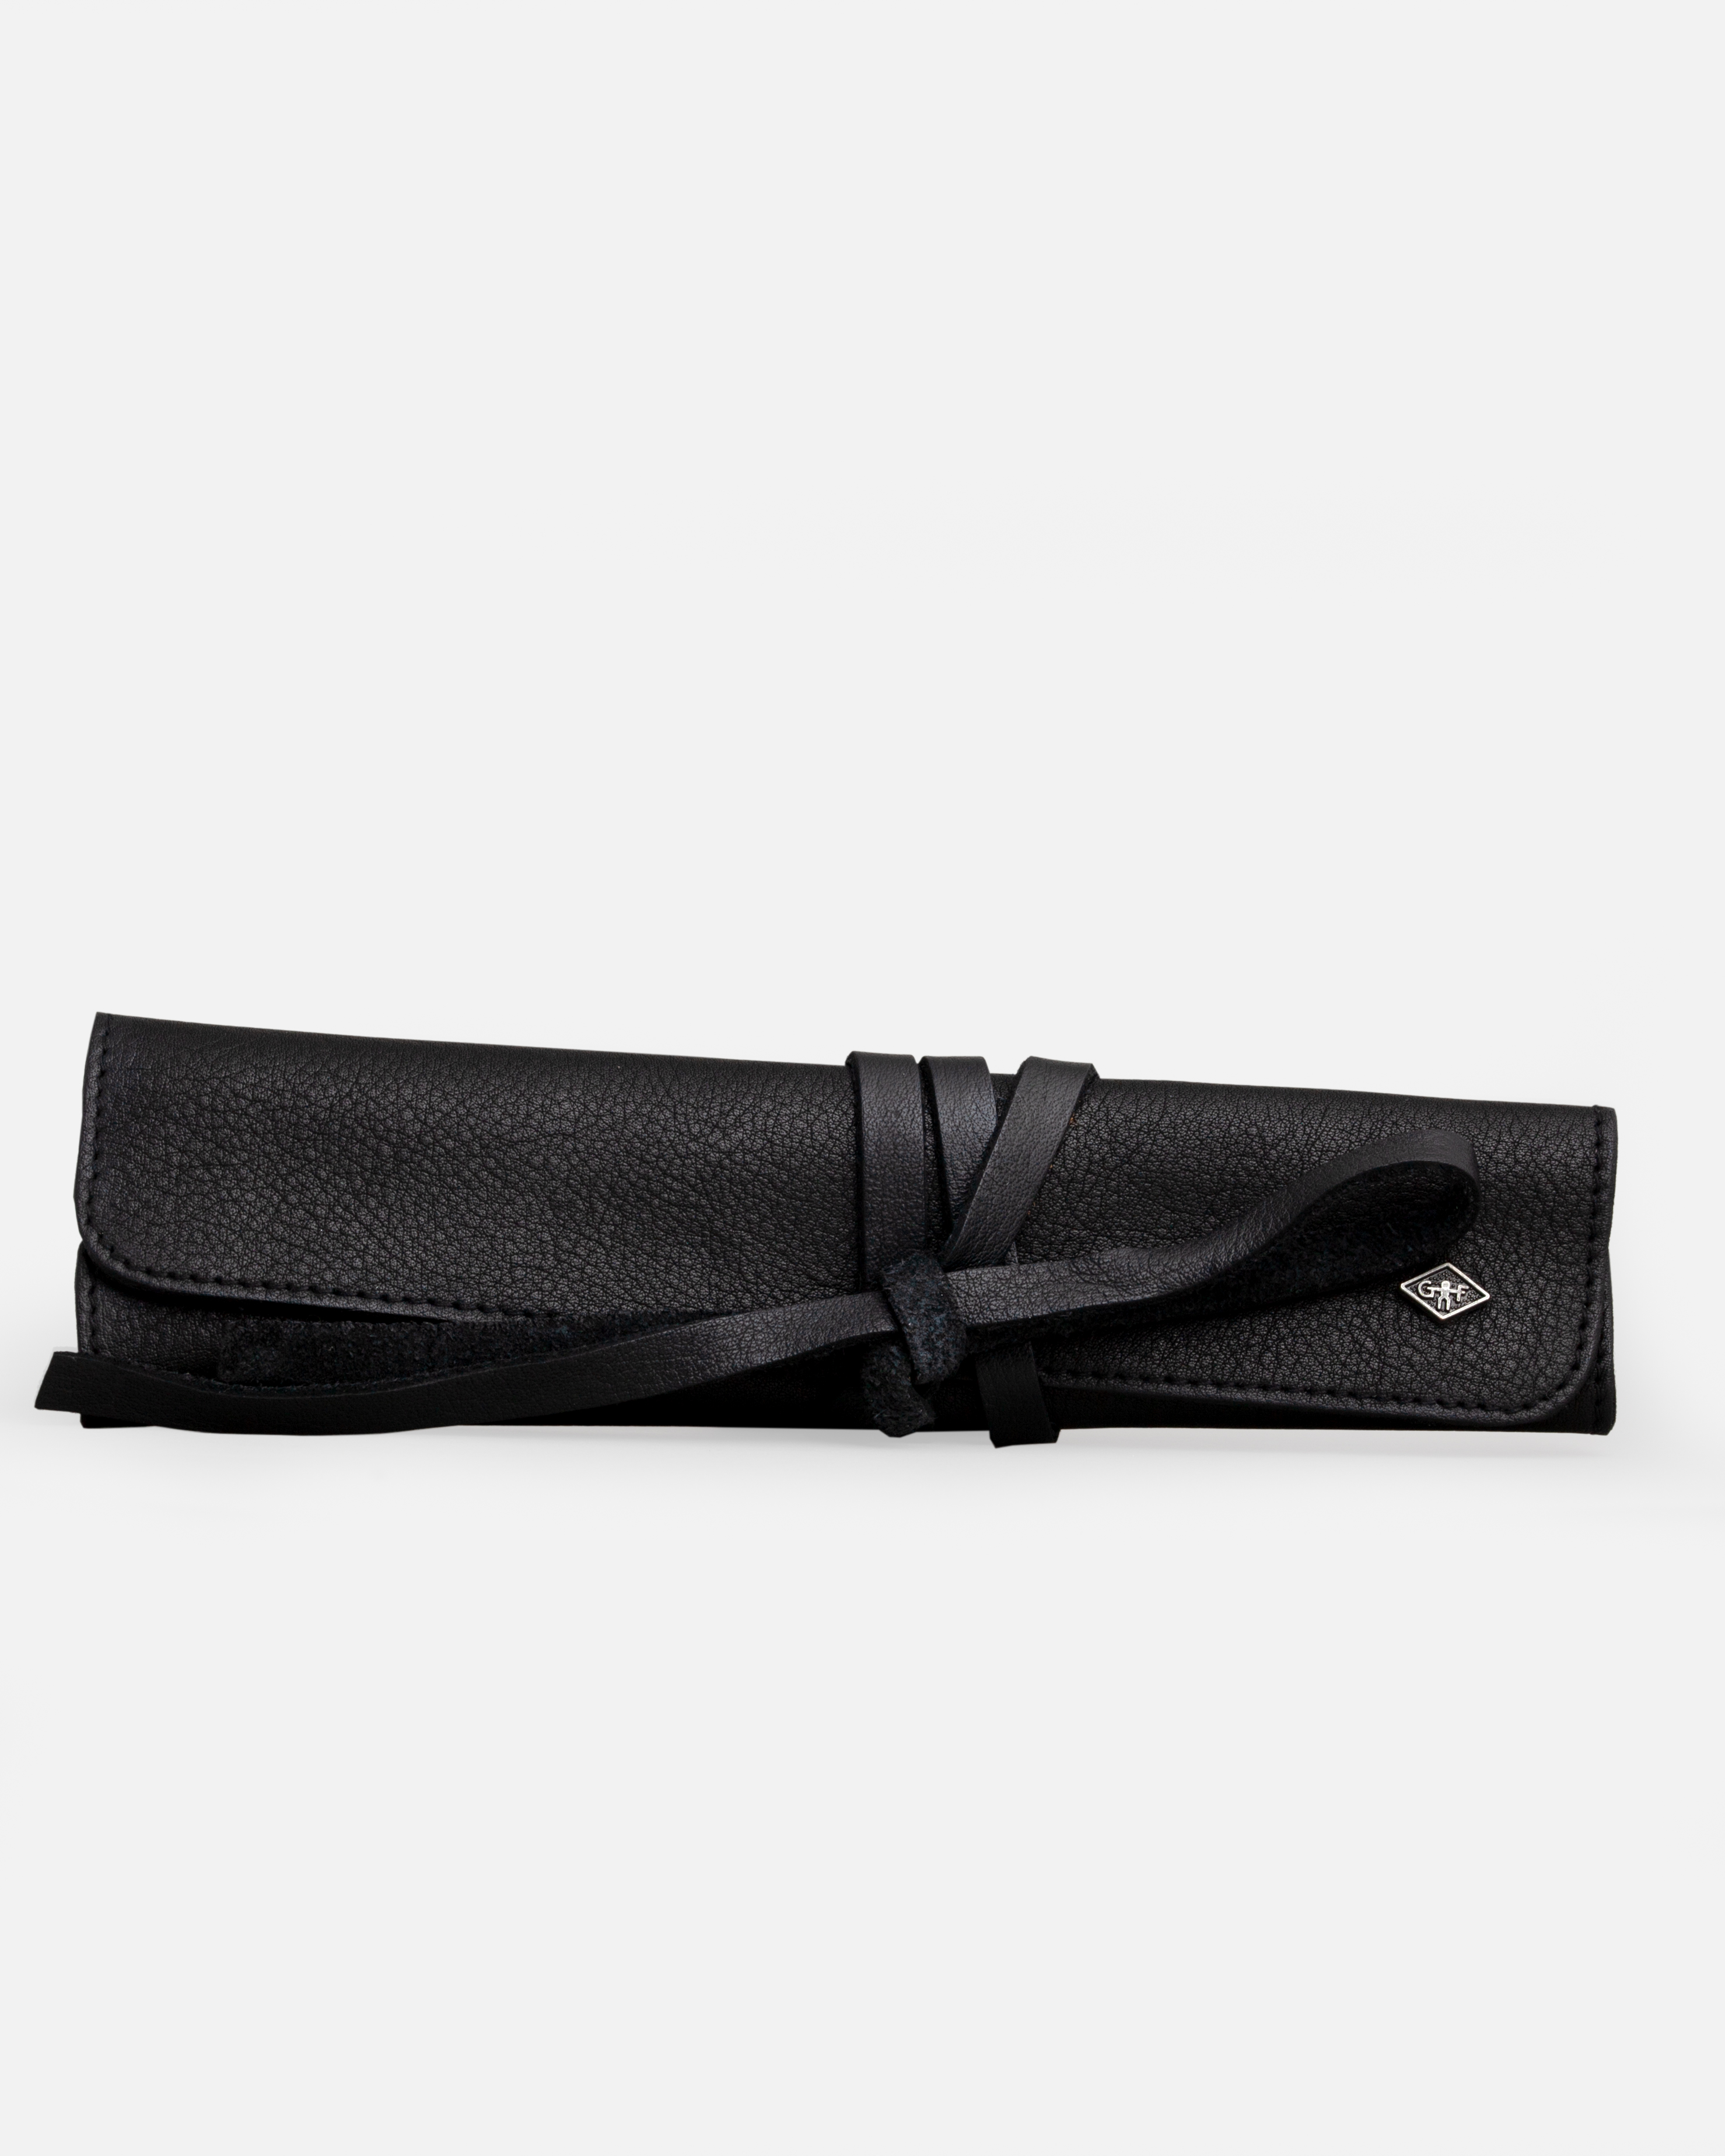 G&F Timor® Rolltasche für 1 Rasiermesser, Leder schwarz